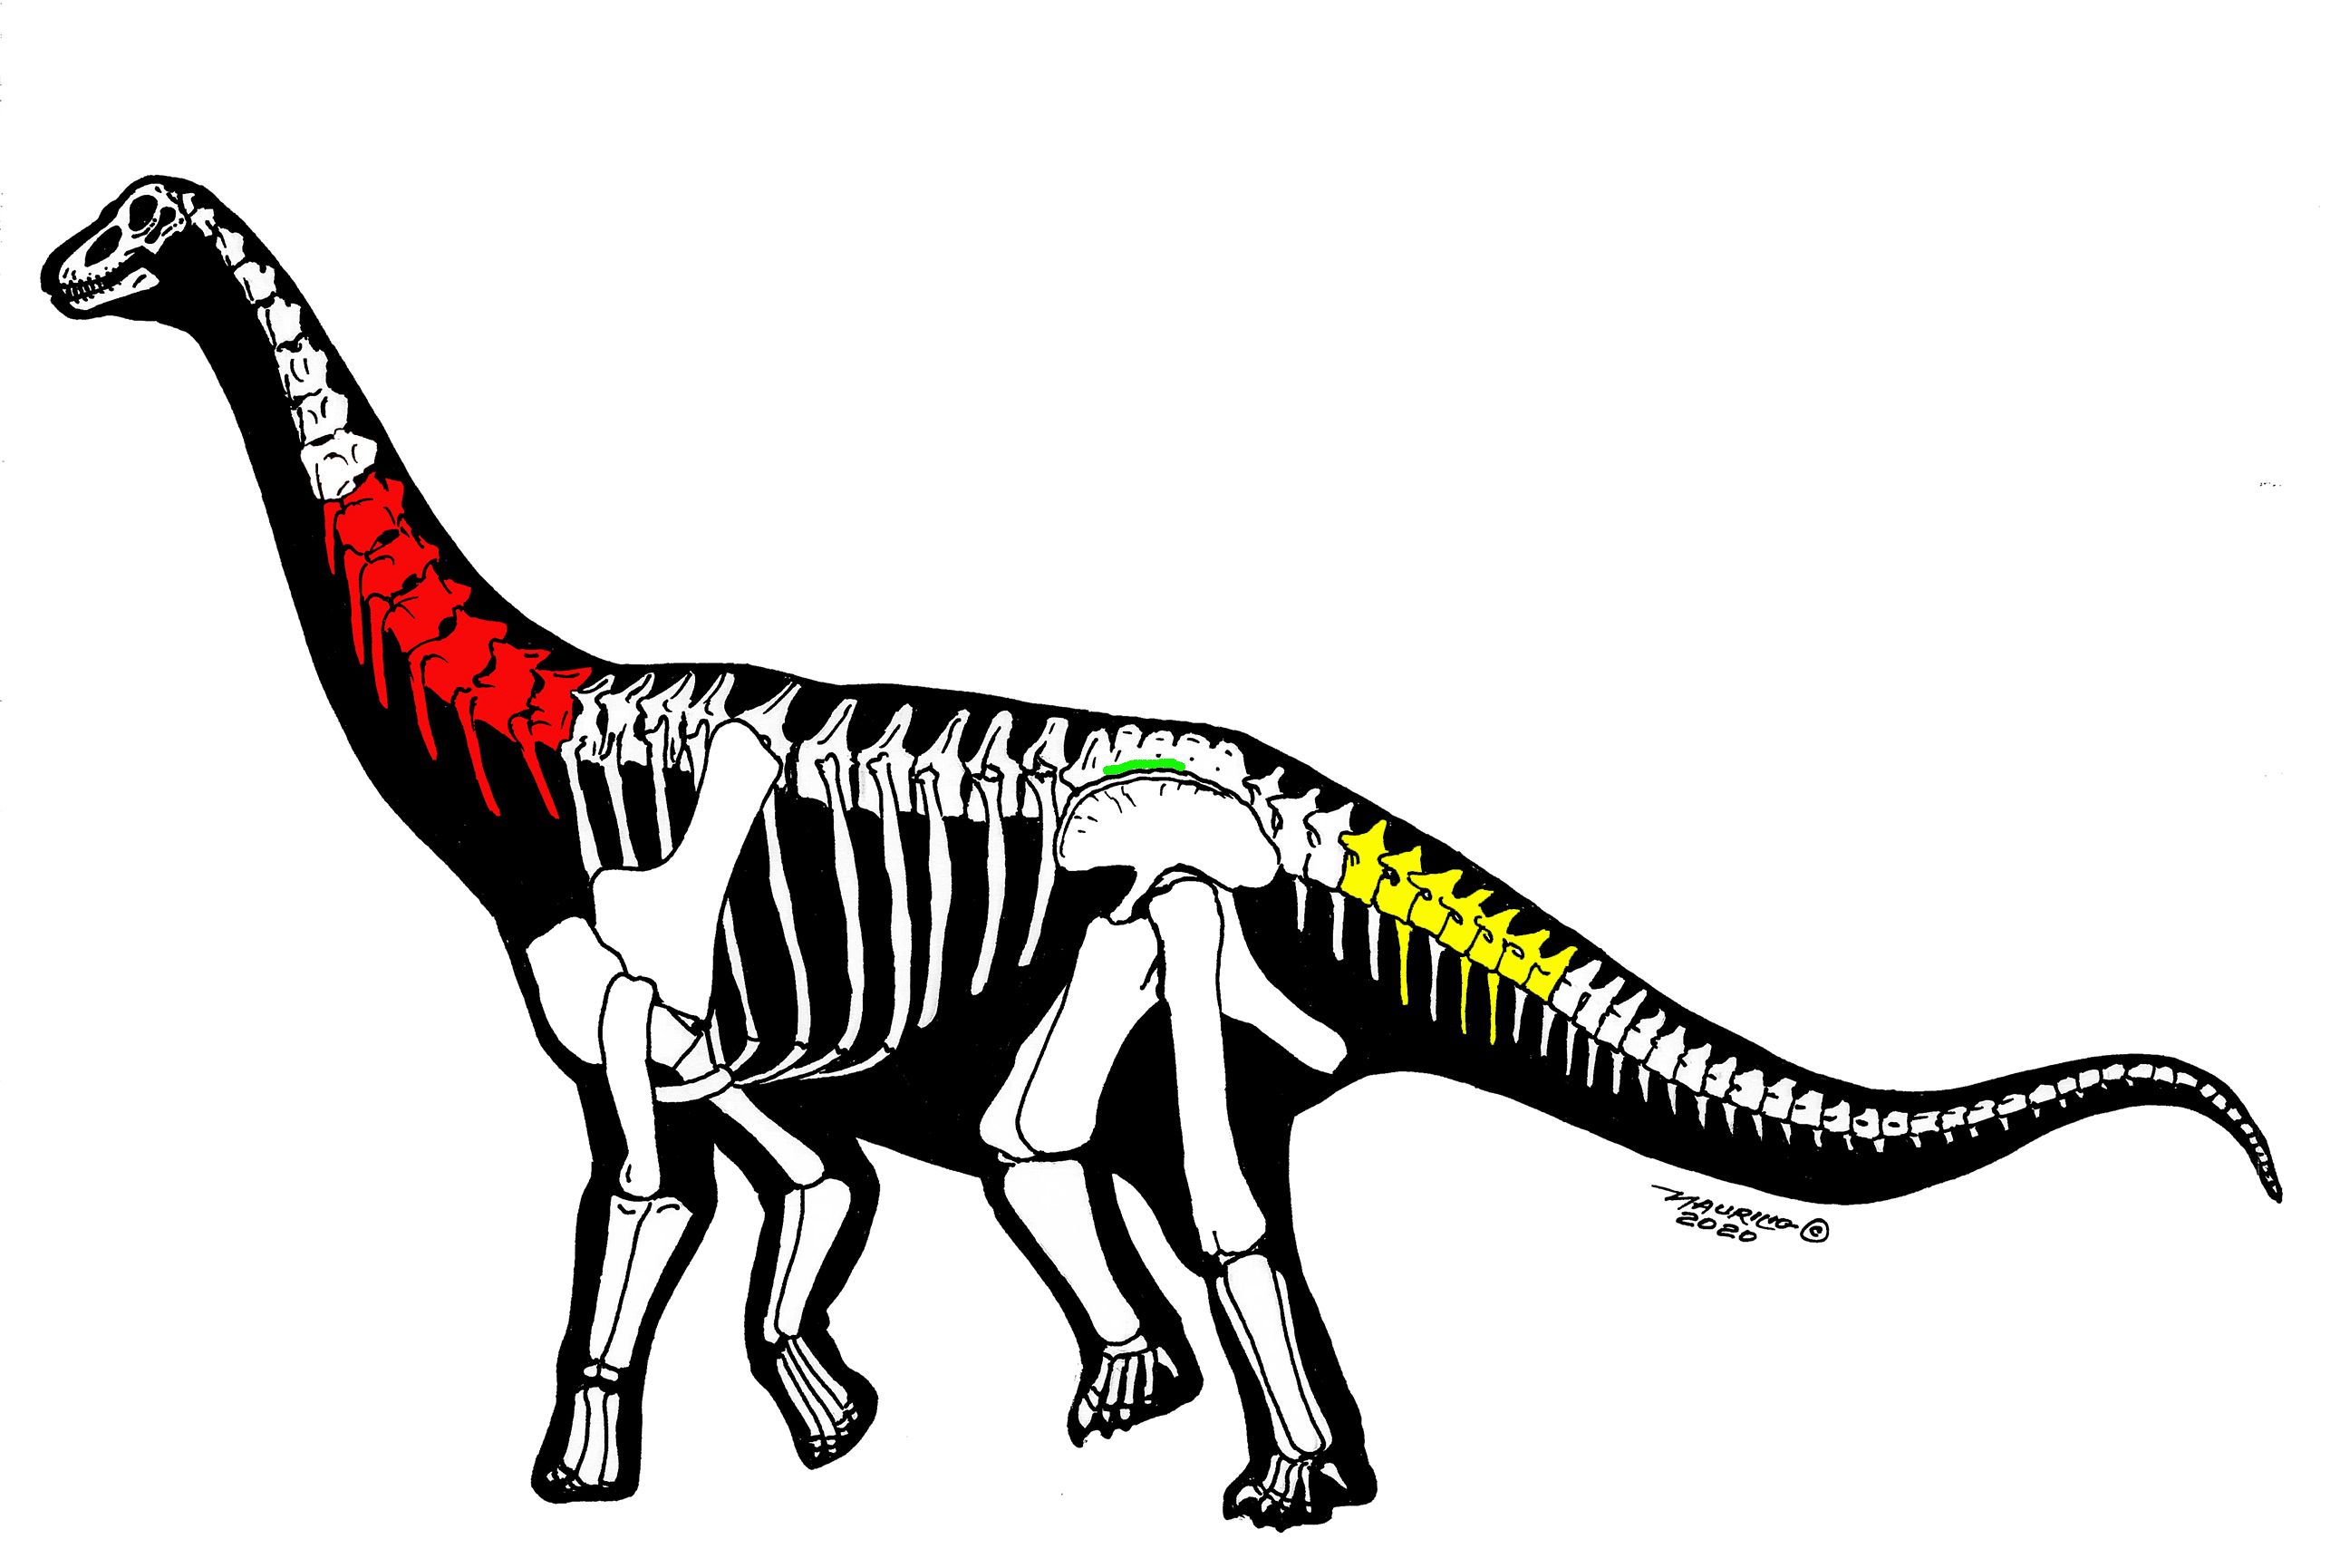 恐龙化石结构图图片